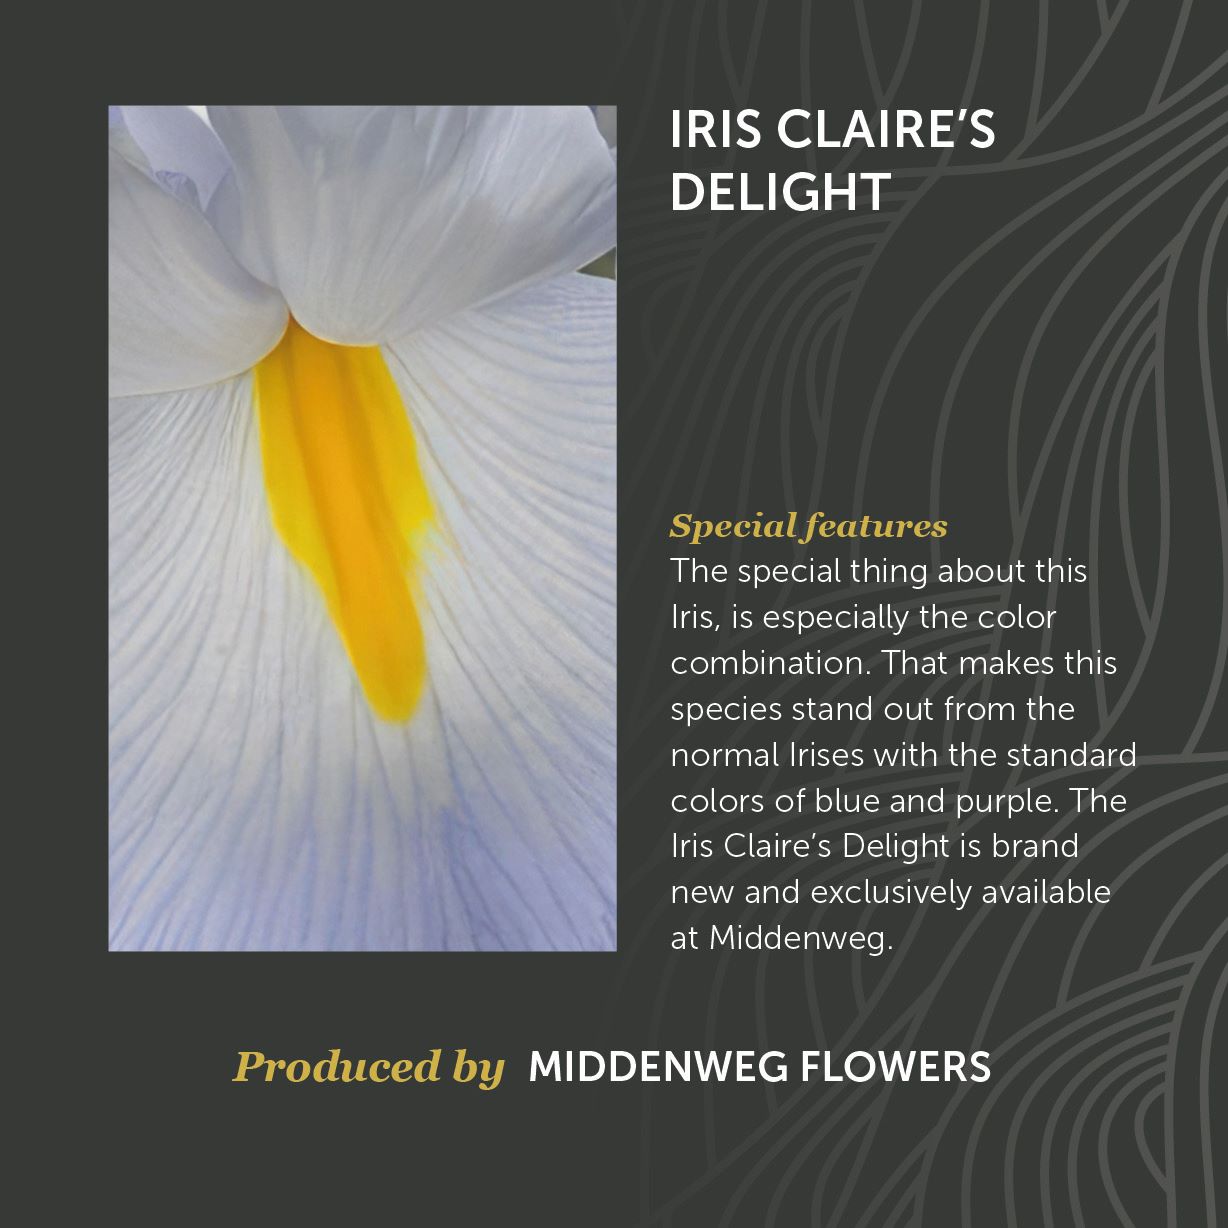 Iris Claire's Delight